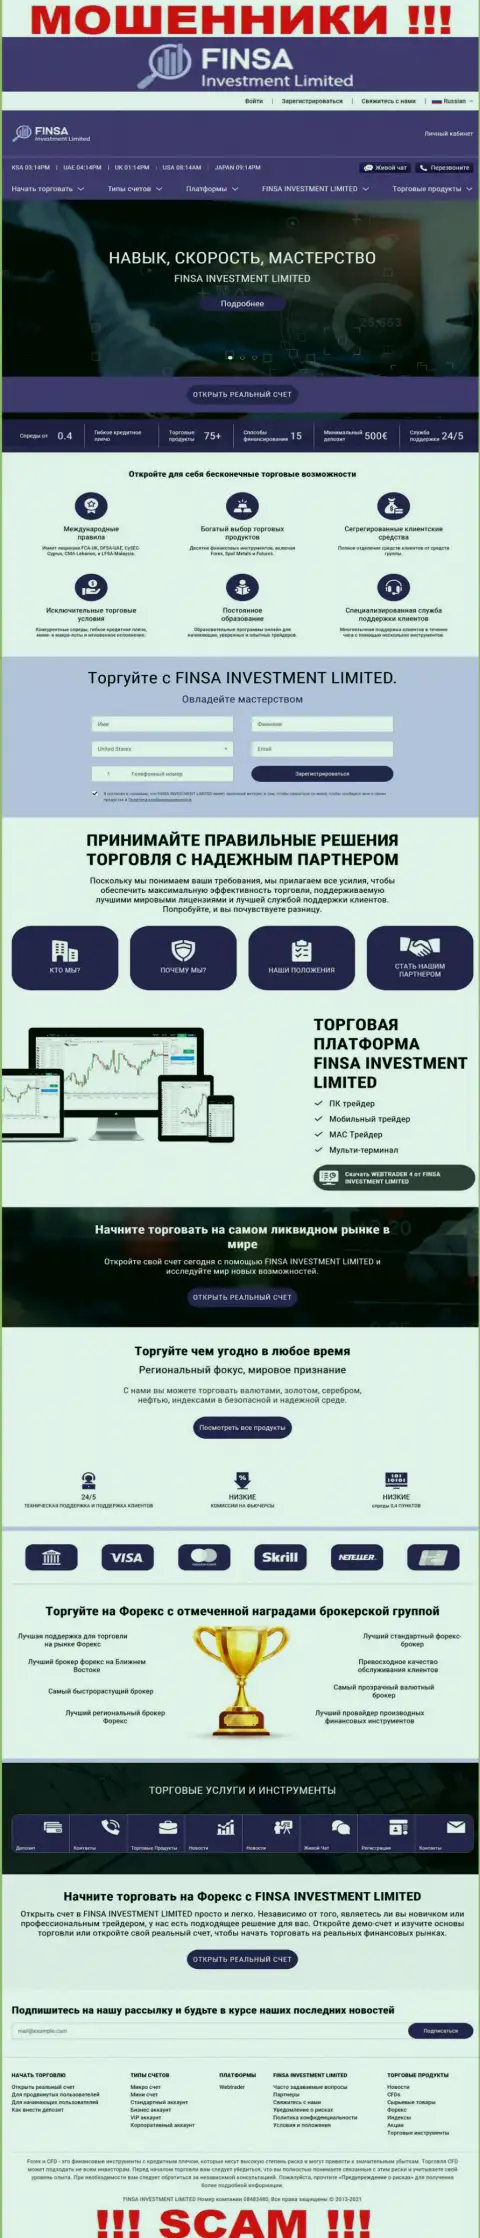 Web-сайт организации ФинсаИнвестментЛимитед Ком, заполненный лживой информацией